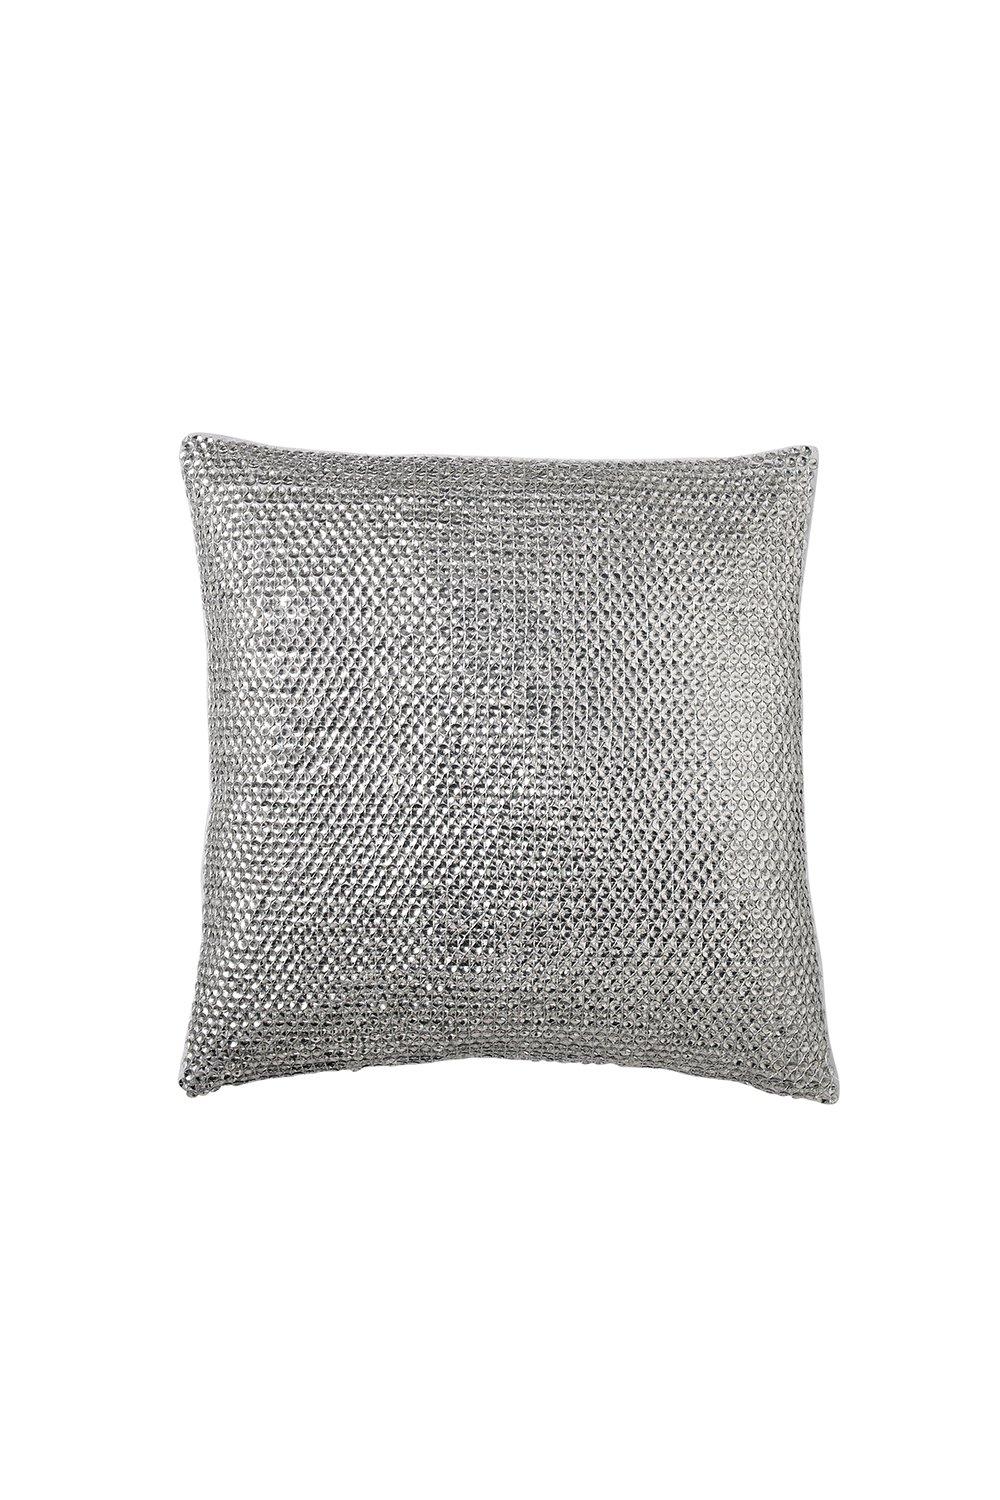 Soft Furnishings | 'Silky Stripe' Cushion 40x40 cm | Donna Karan